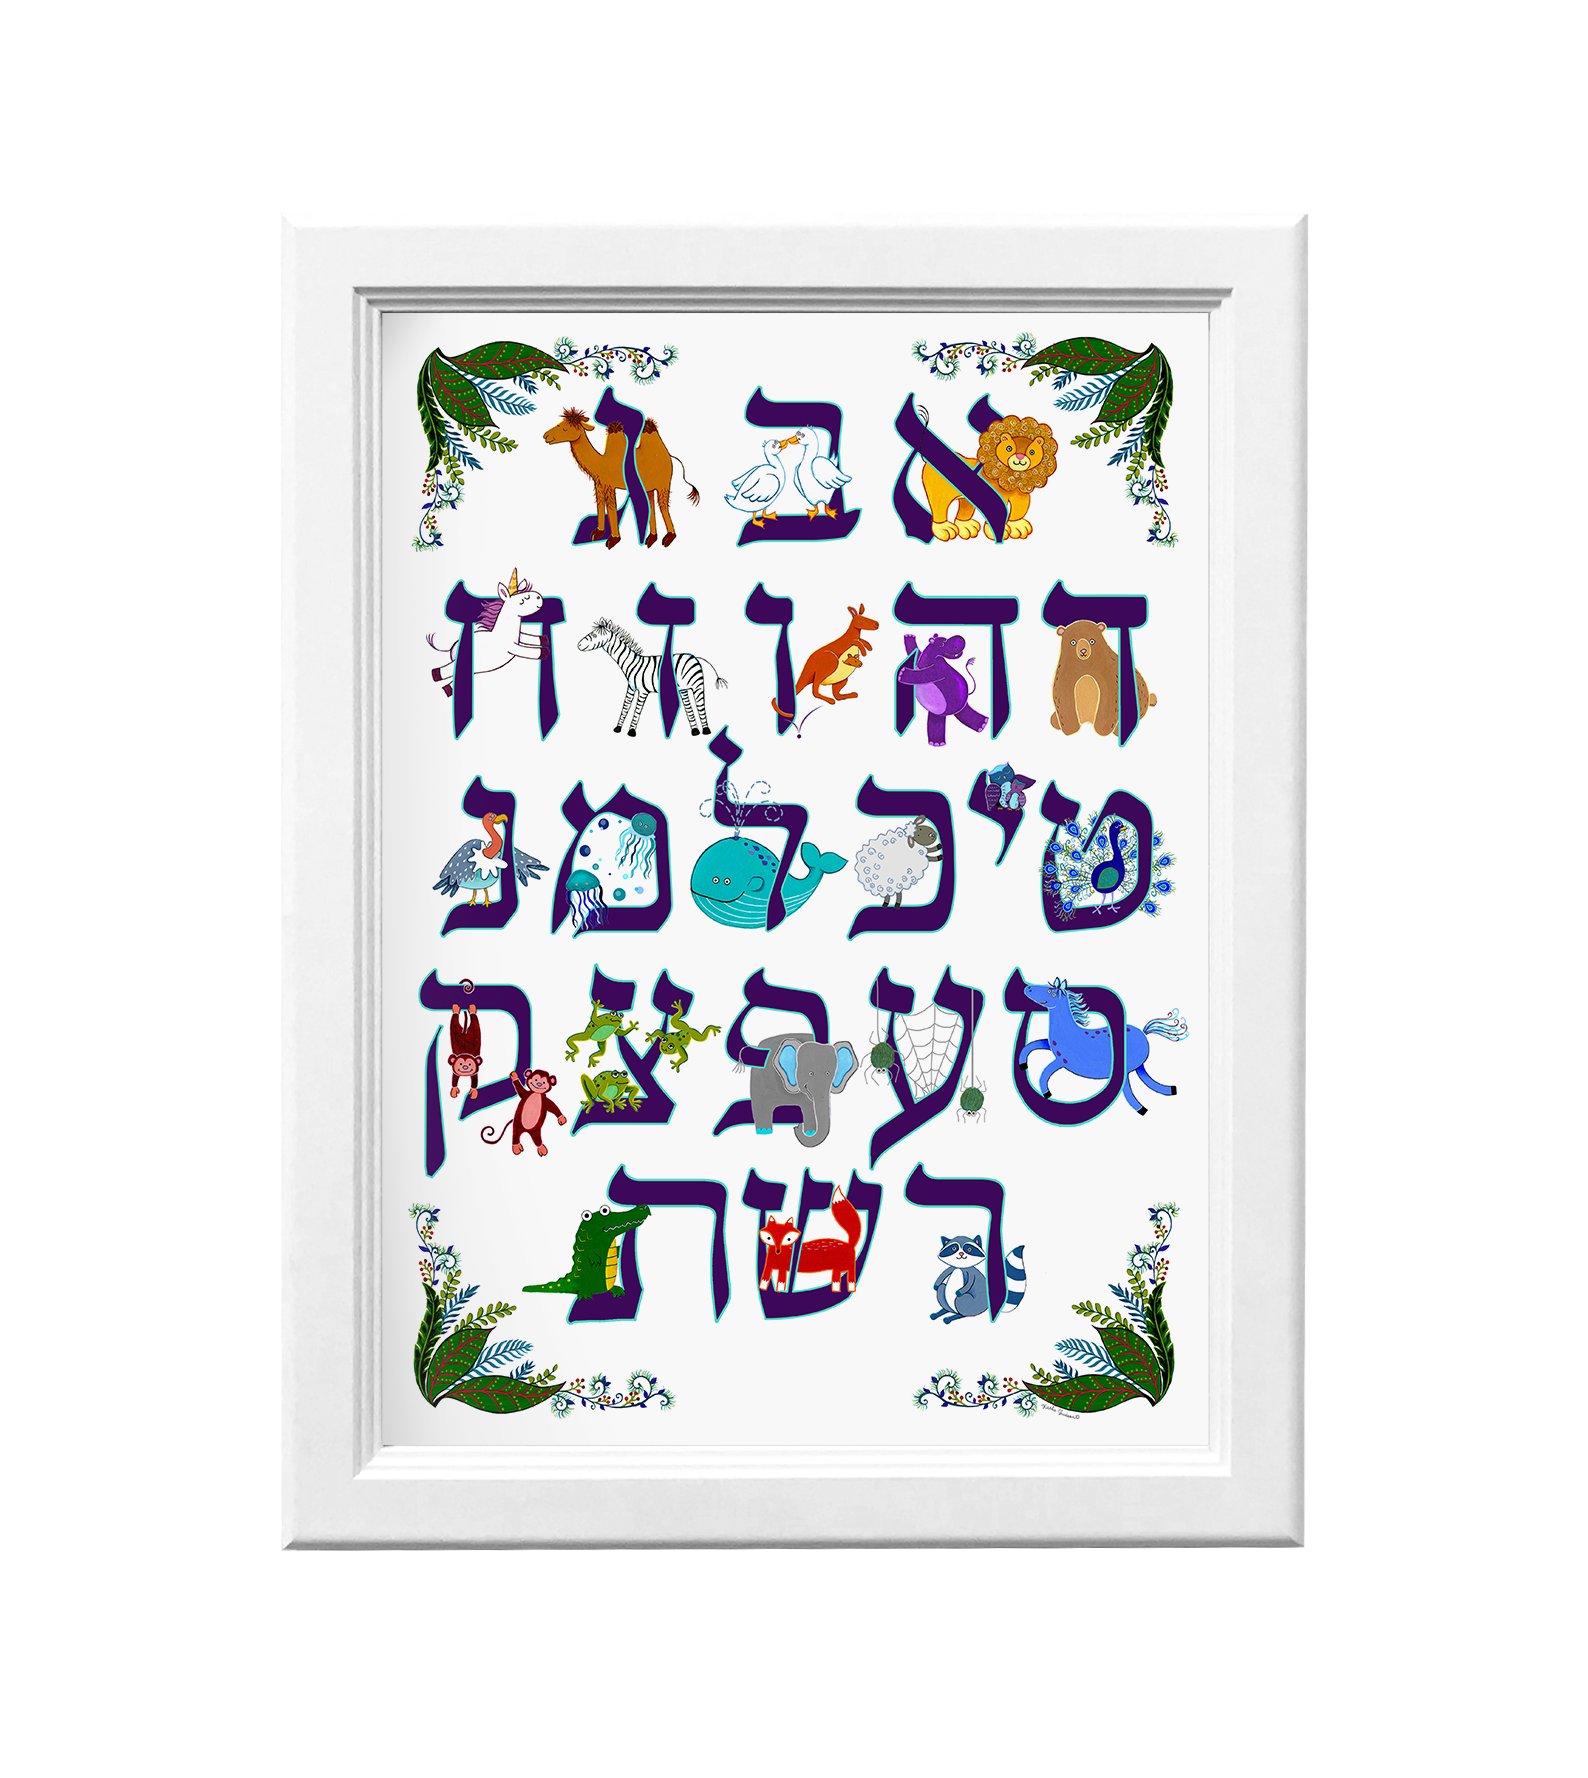 Hebrew Aleph Bet